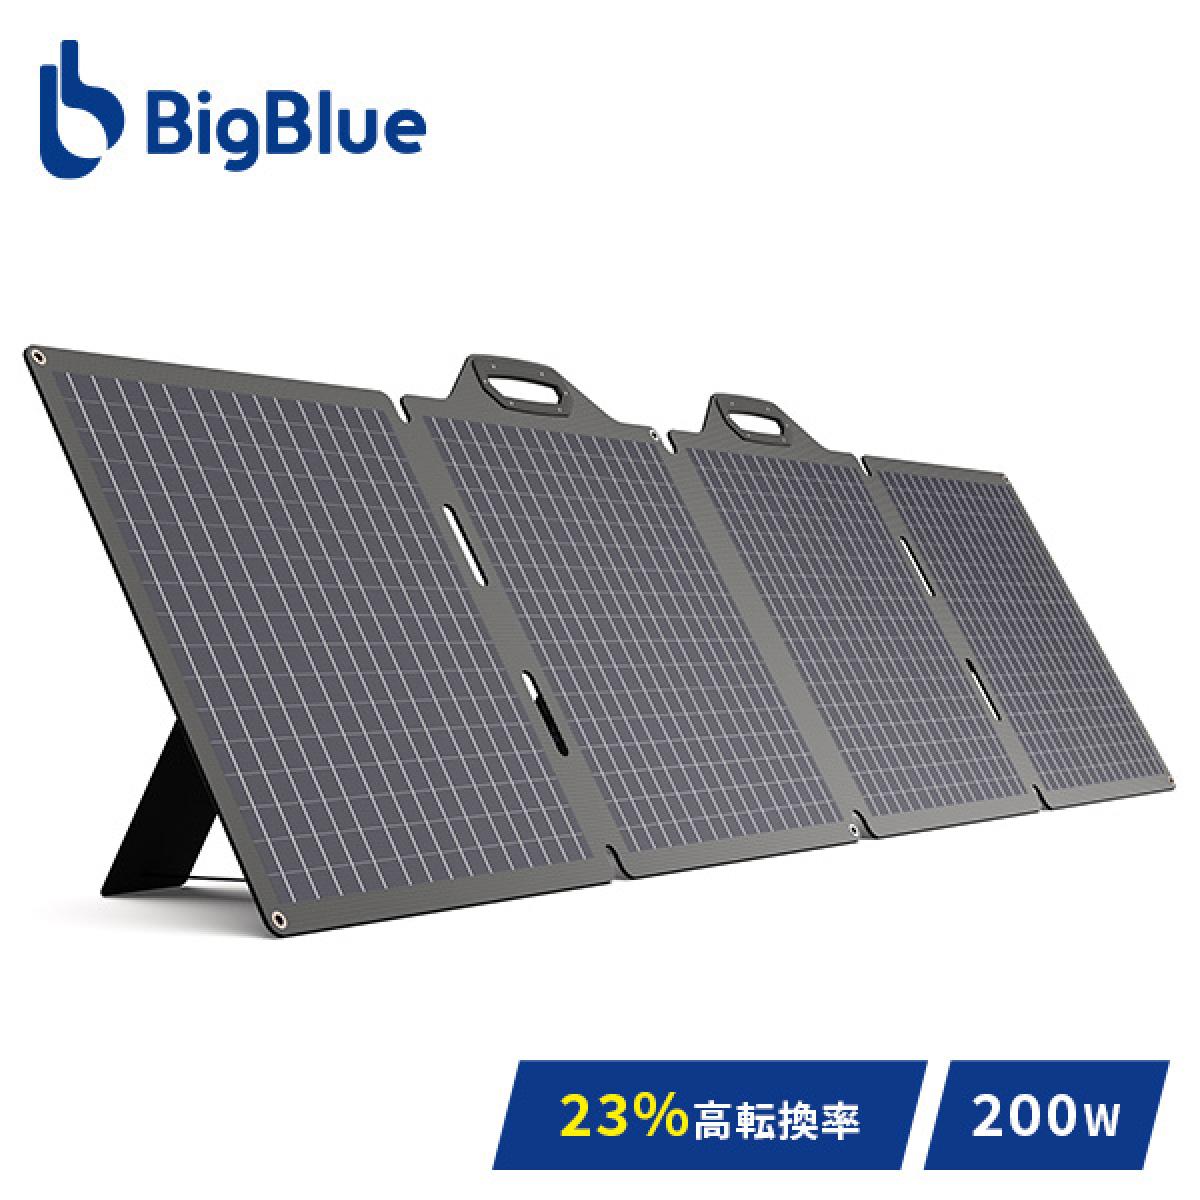 【20台限定】Bigblue ソーラーパネル 200W SP200 B504V 充電 バッテリー 停電 ソーラーチャージャー 太陽光発電 太陽光パネル 急速充電 節電 防災グッズ